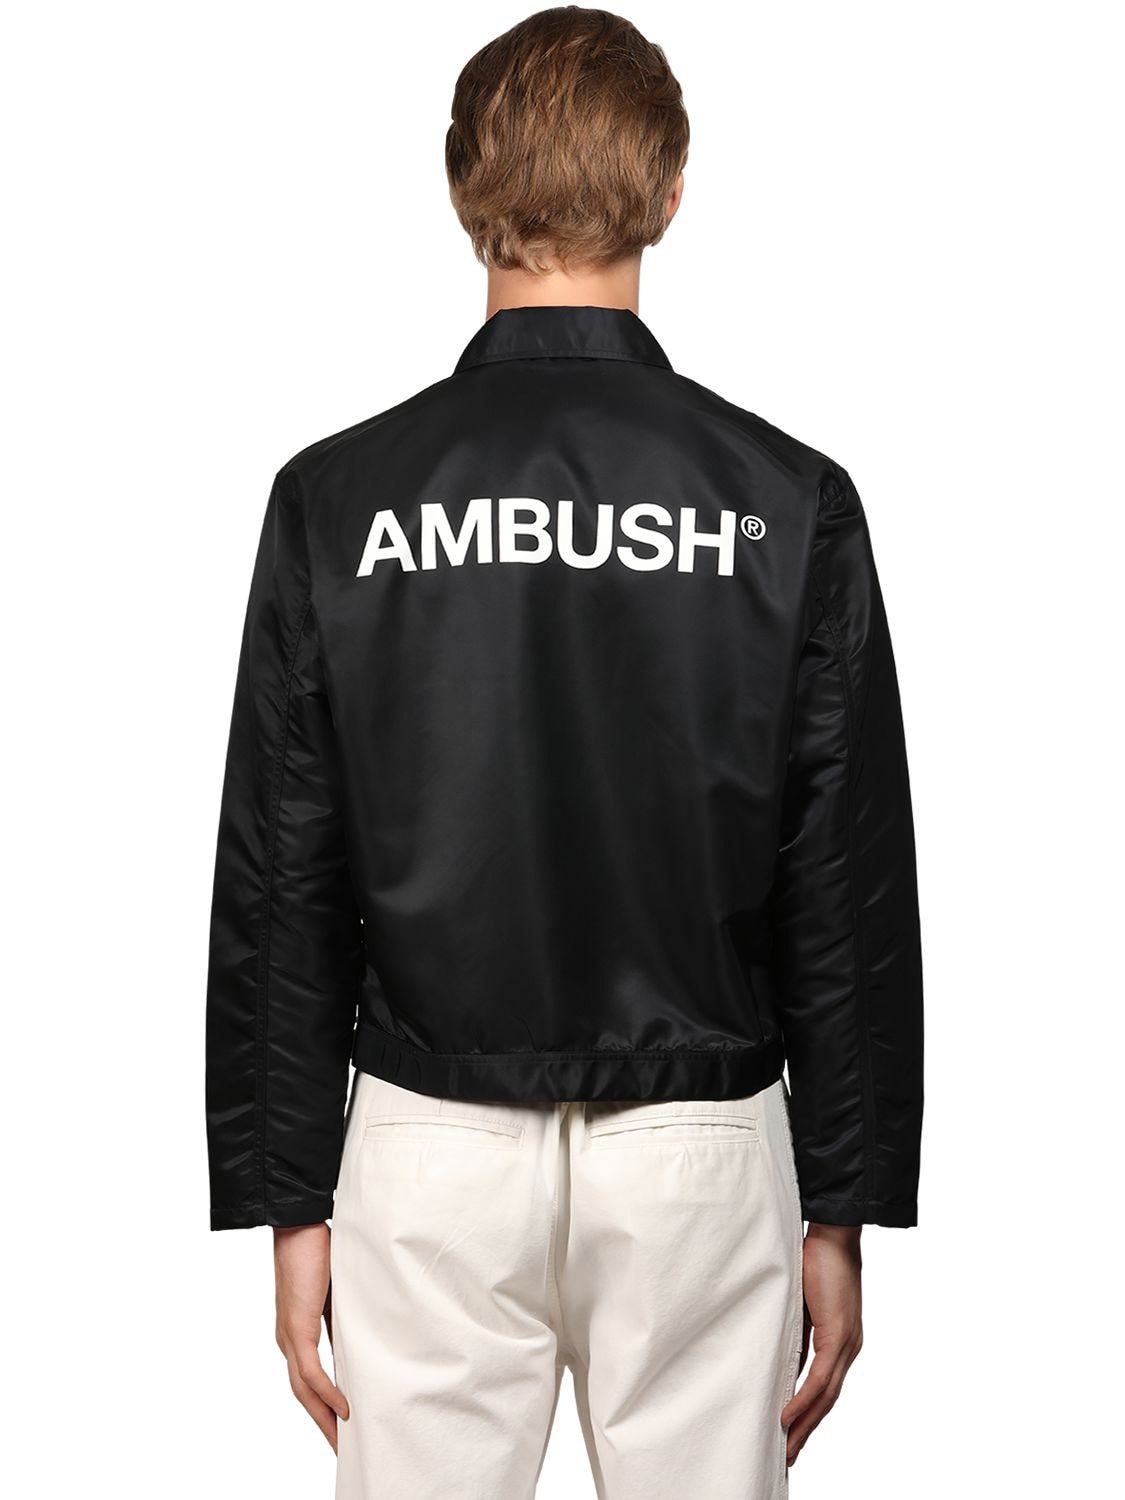 AMBUSH Jackets for Men | ModeSens